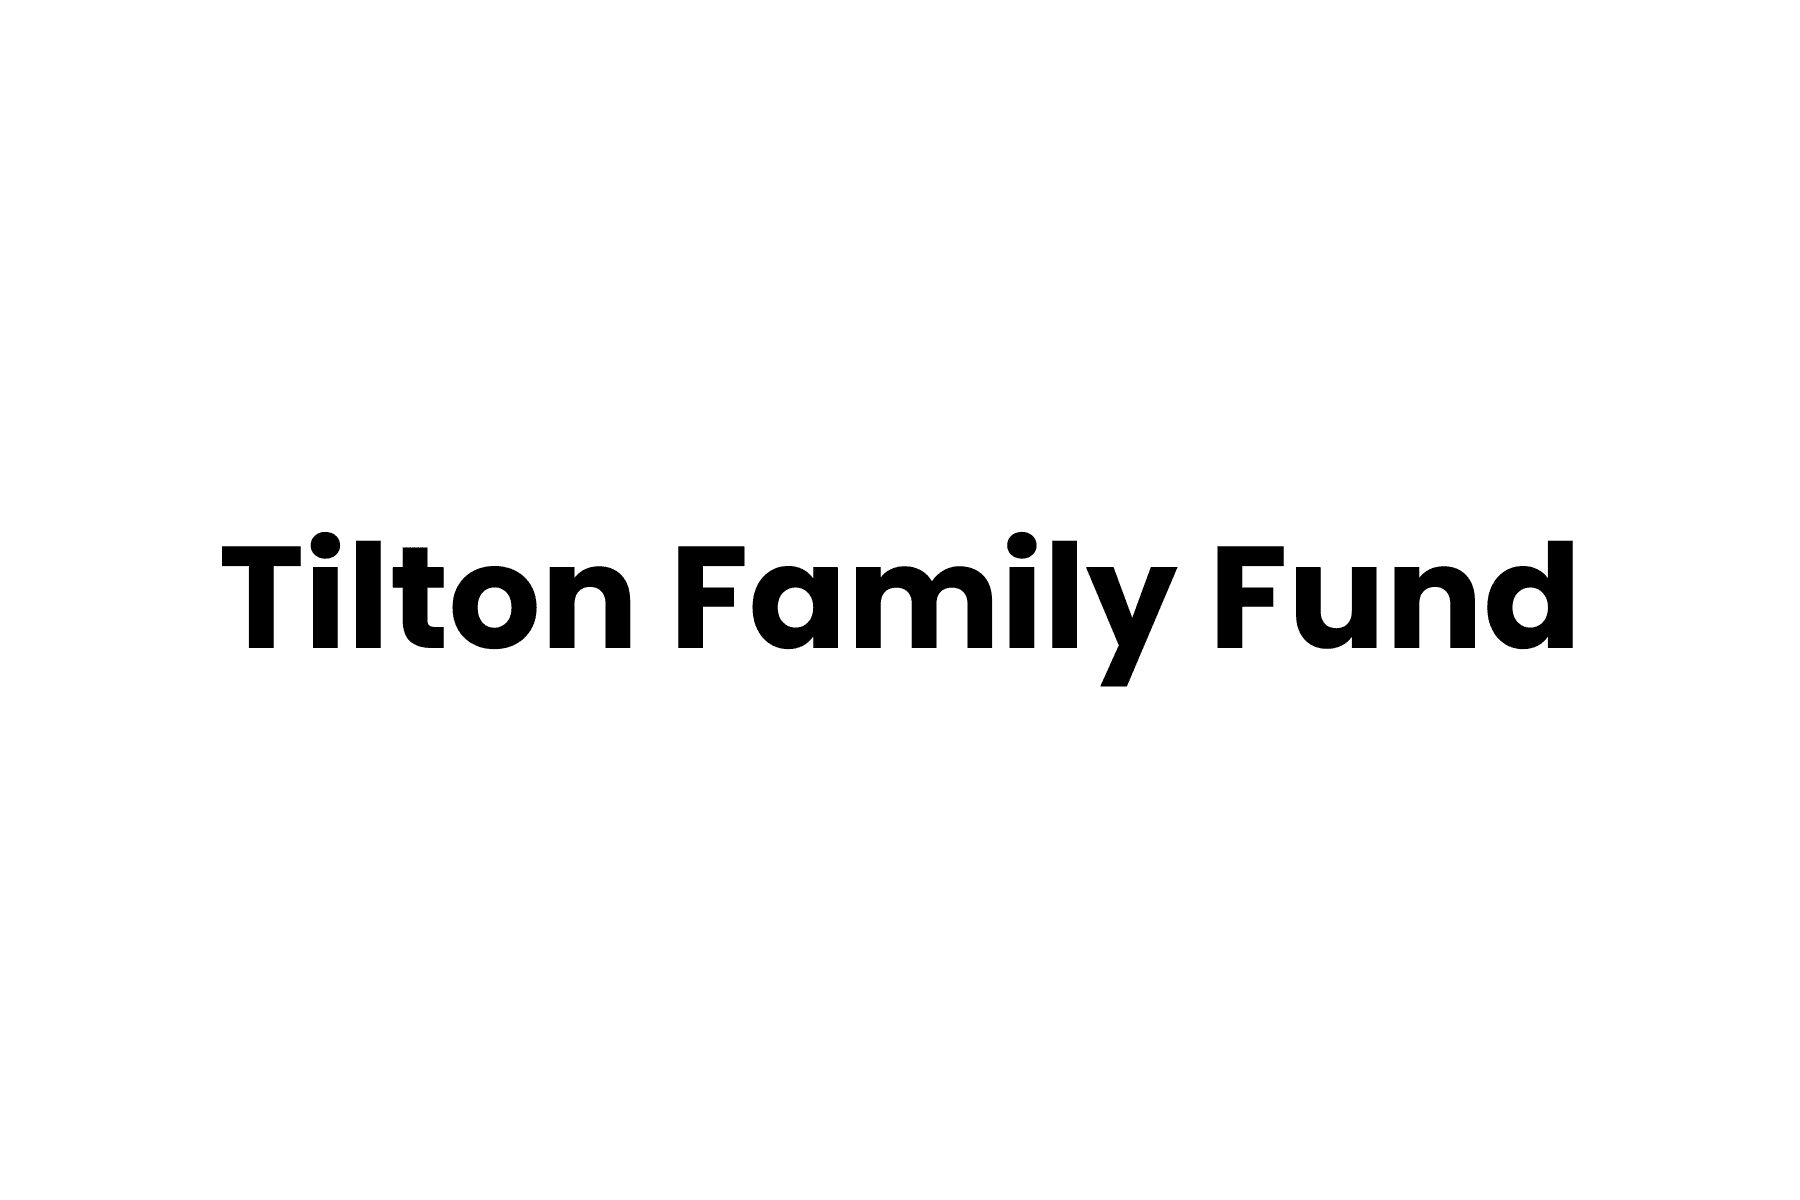 Tilton Family Fund